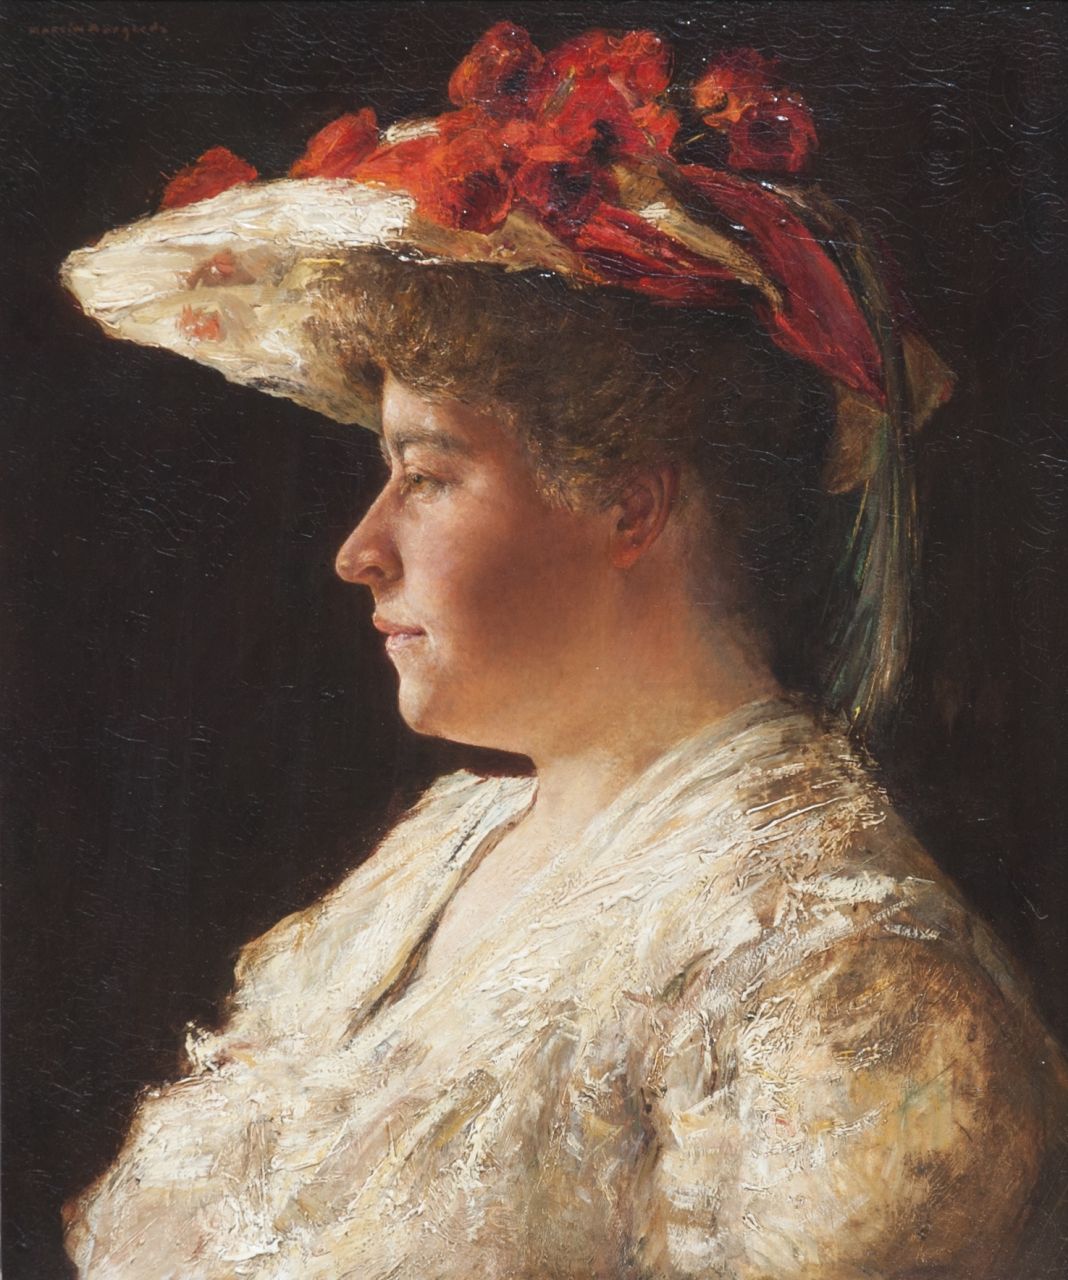 Borgord M.  | Martin Borgord, Portret van mevrouw A. Singer-Brugh, olieverf op doek 55,2 x 46,0 cm, gesigneerd linksboven